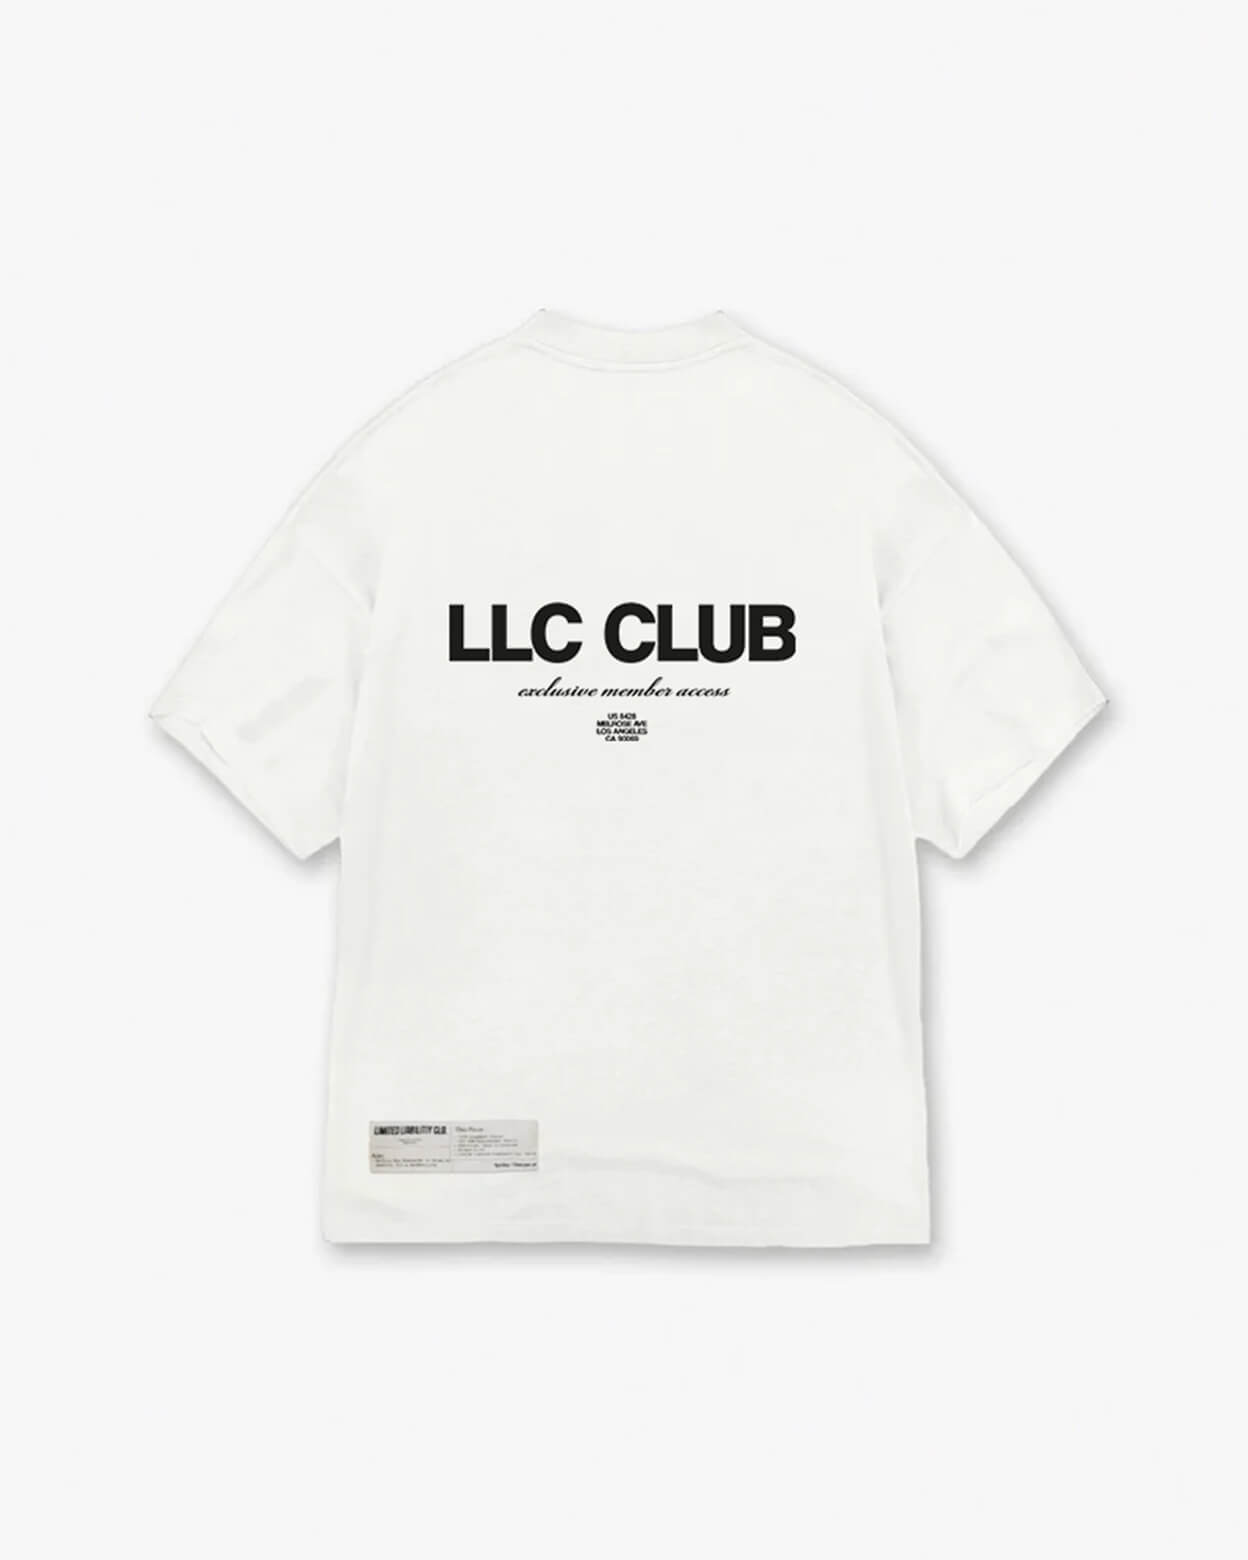 LLC CLUB T-SHIRT - WHITE